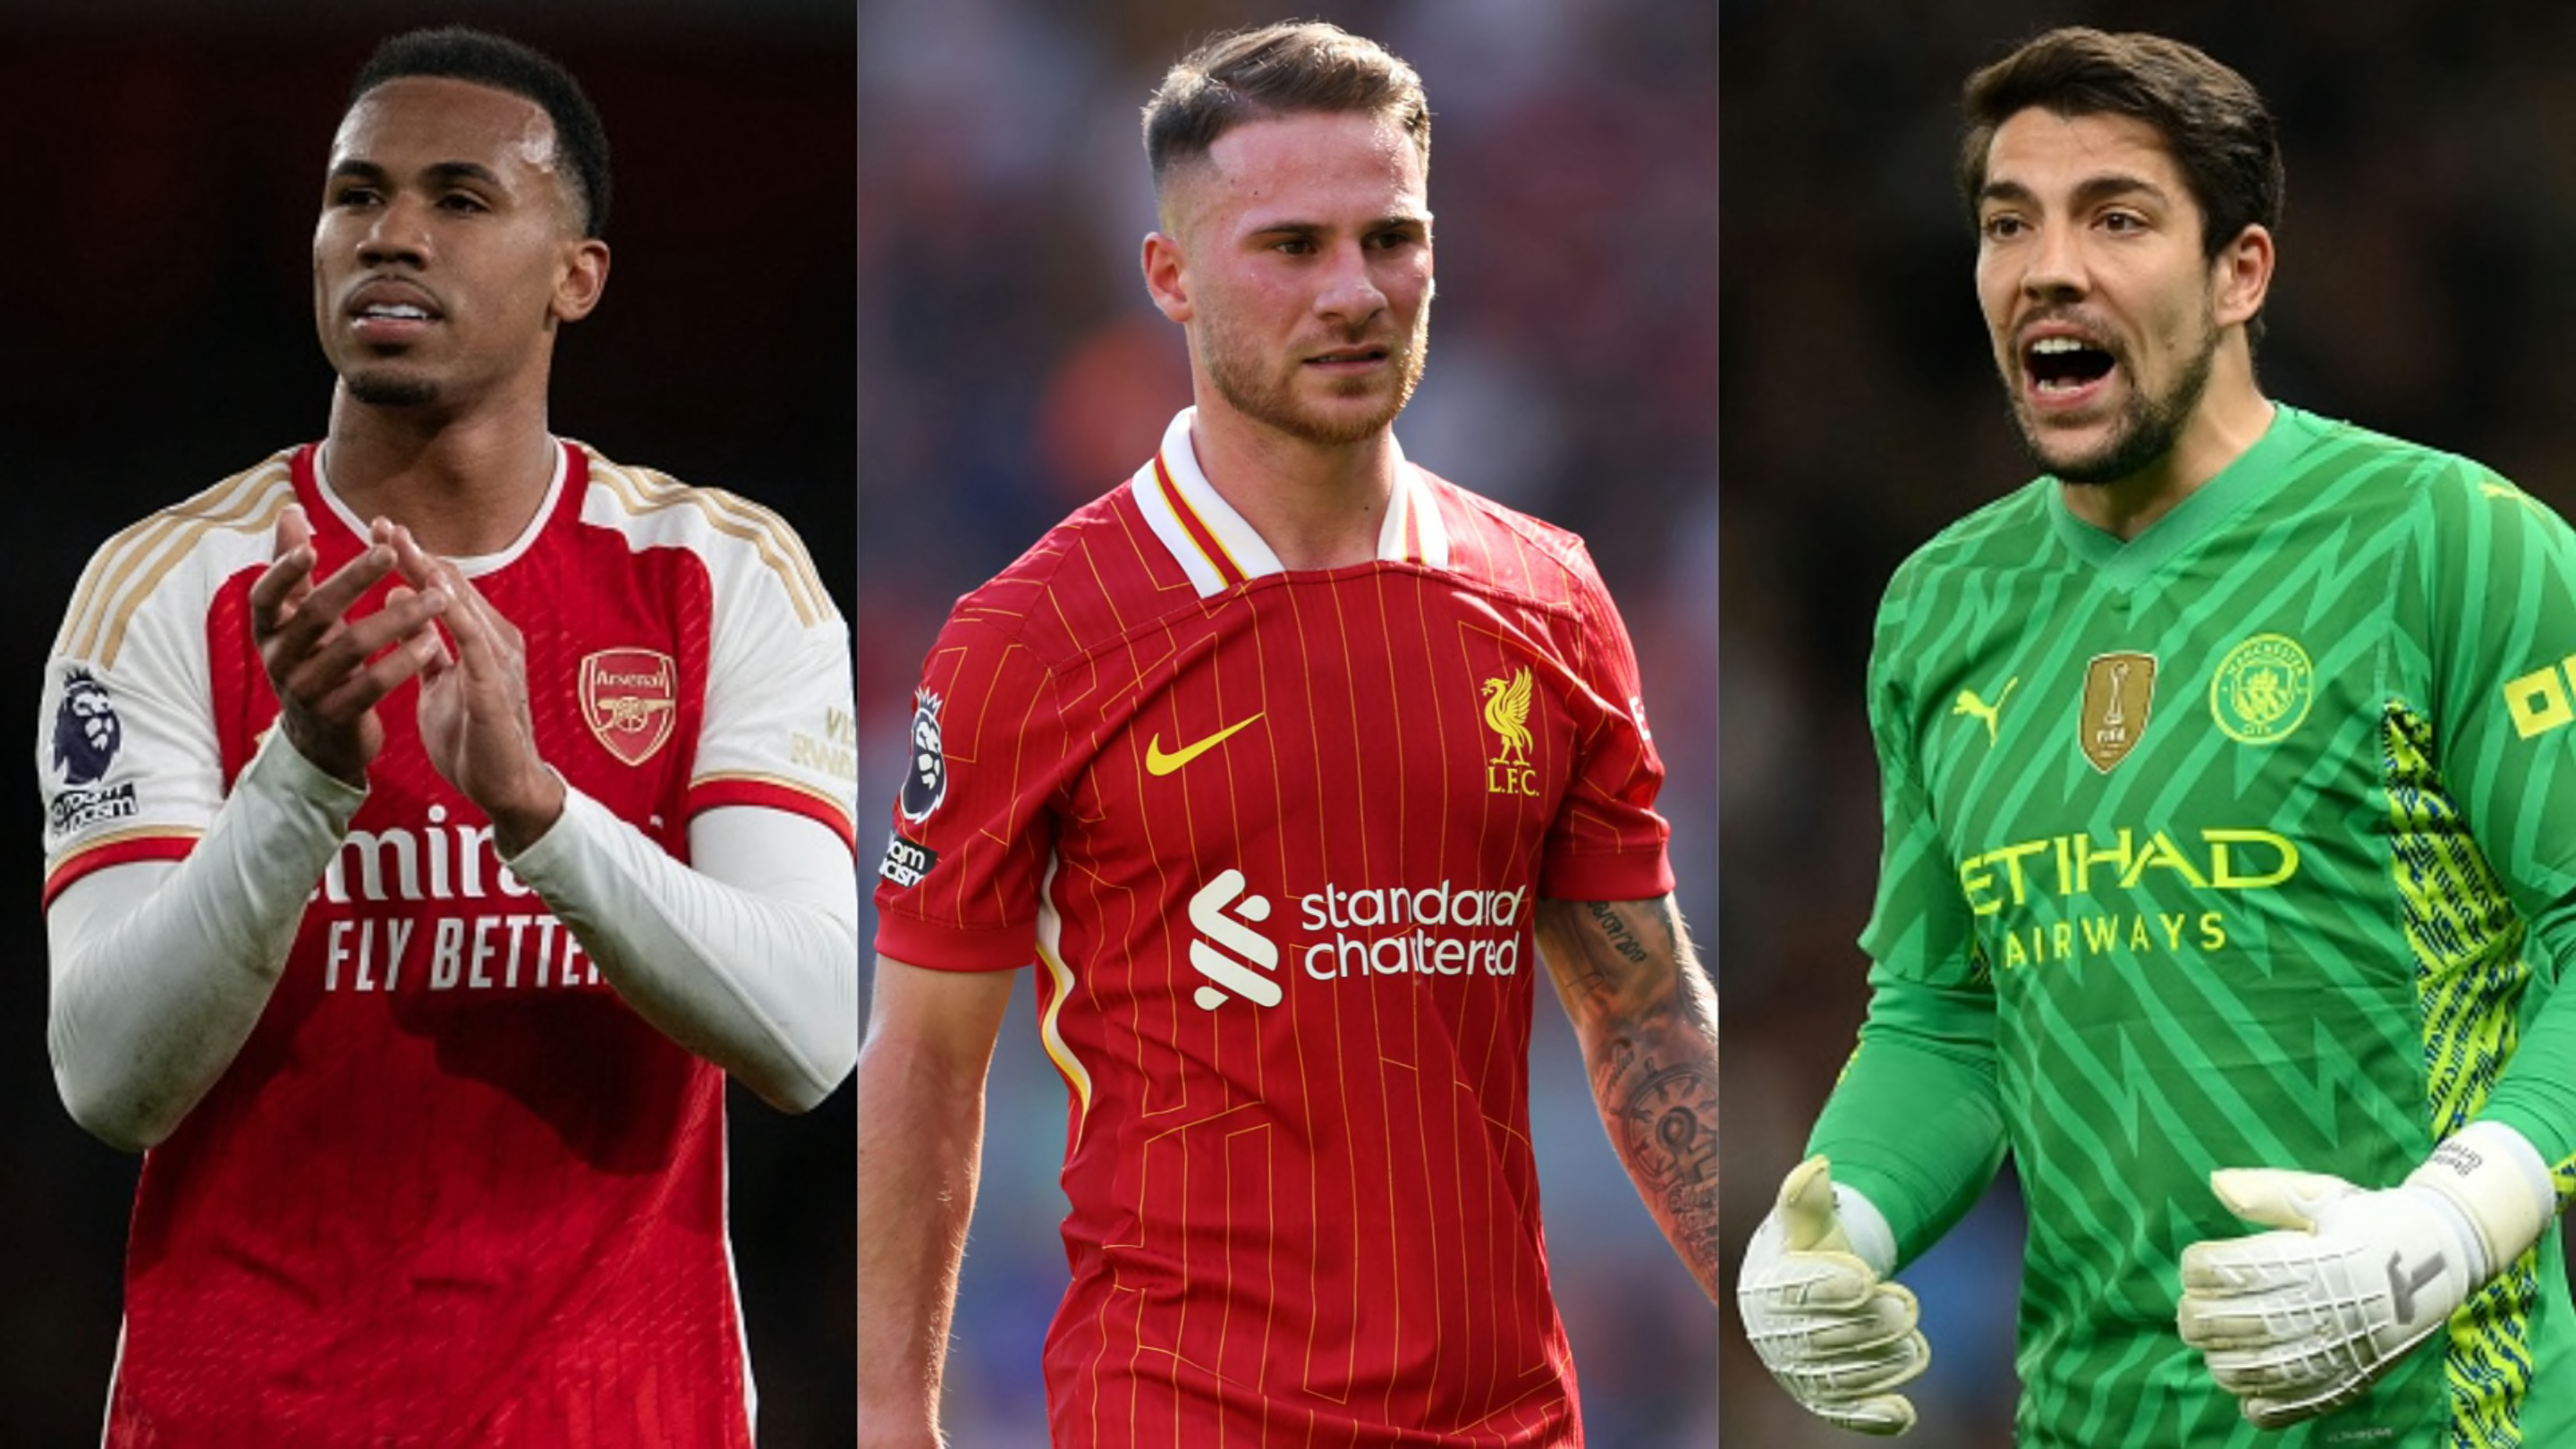 The Premier League top 6's unsung heroes